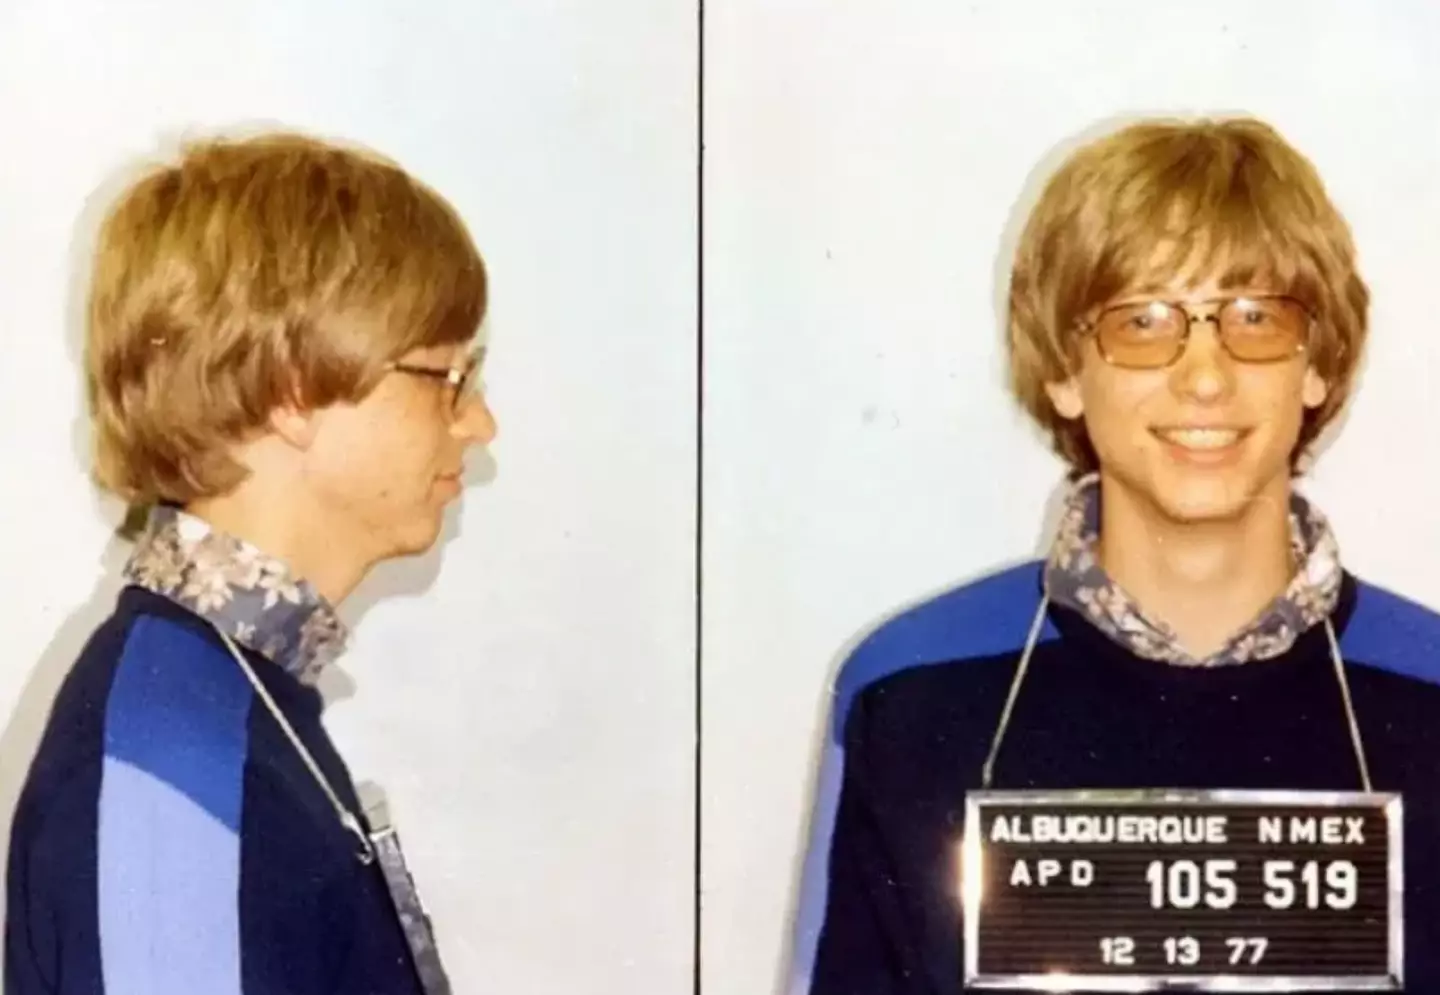 Bill Gates' mugshot.